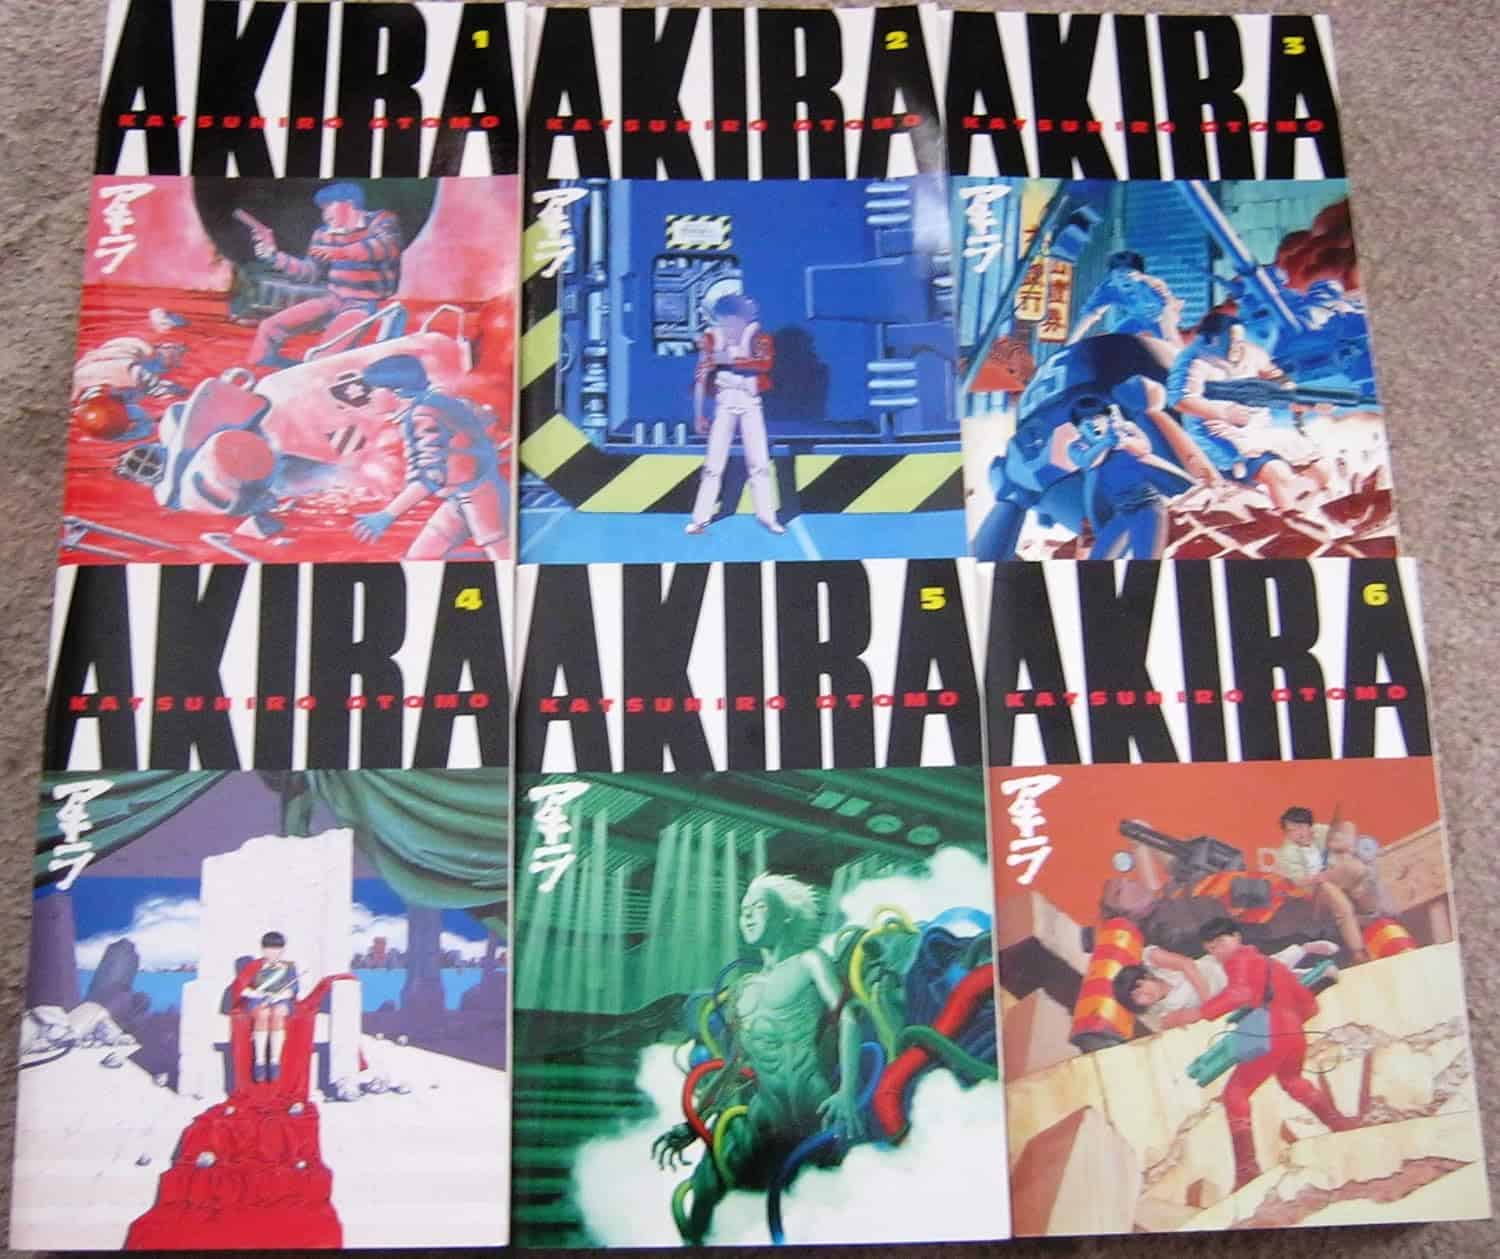 Akira Series by Katsuhiro Otomo (1982)